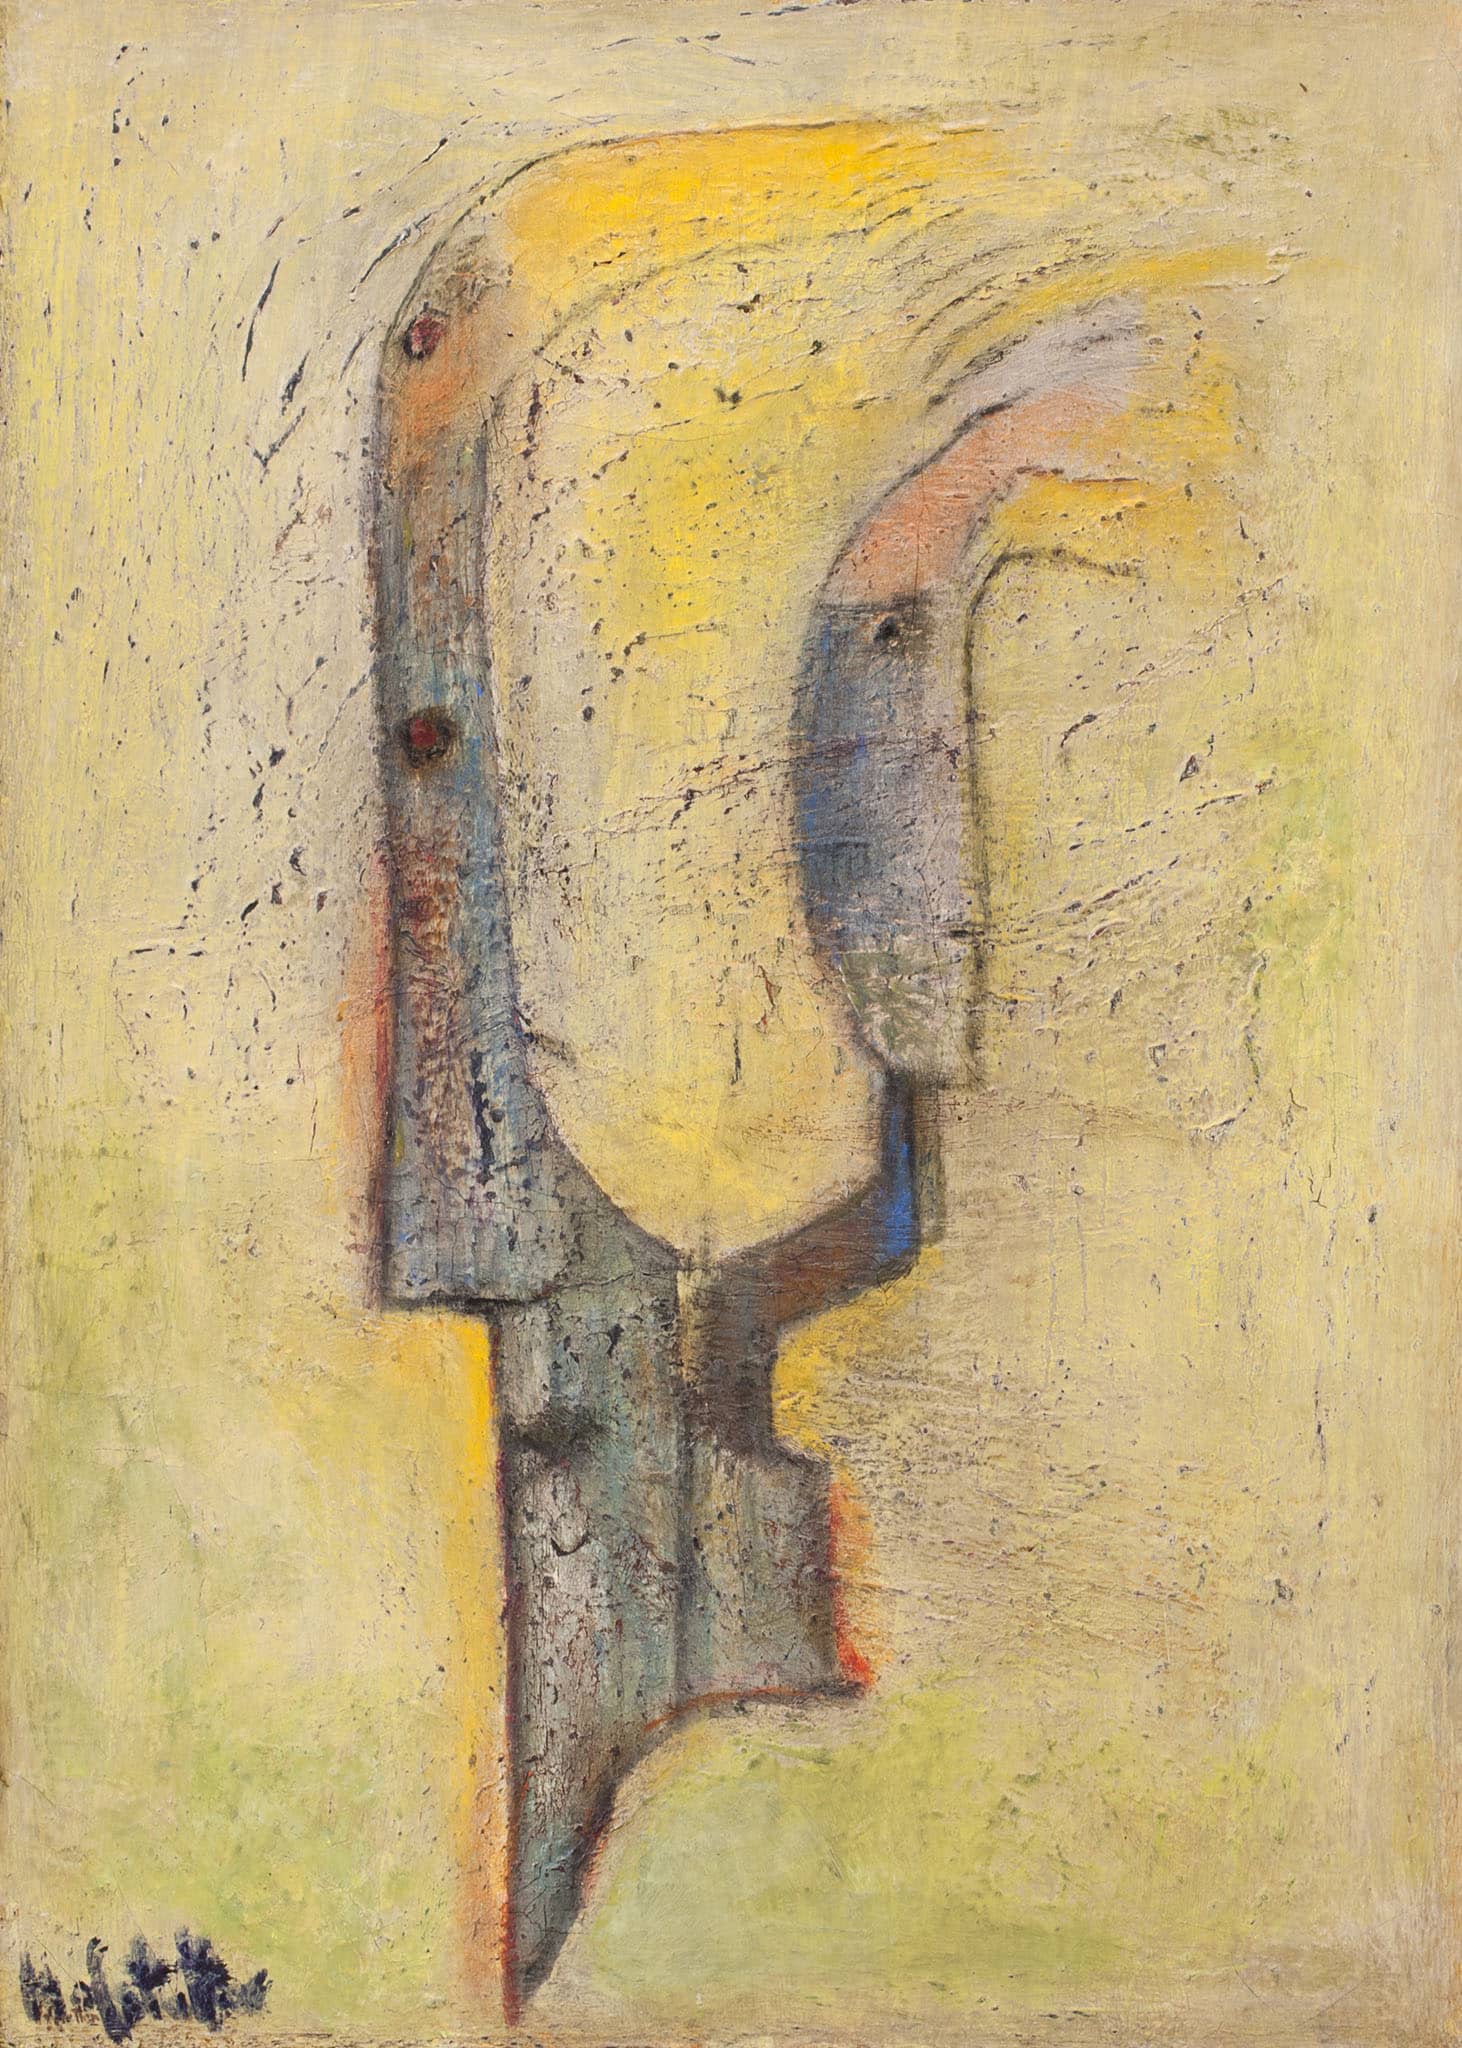 אוזיאש הופשטטר, "The Love of Destruction", שמן על בד, 50x70 ס"מ